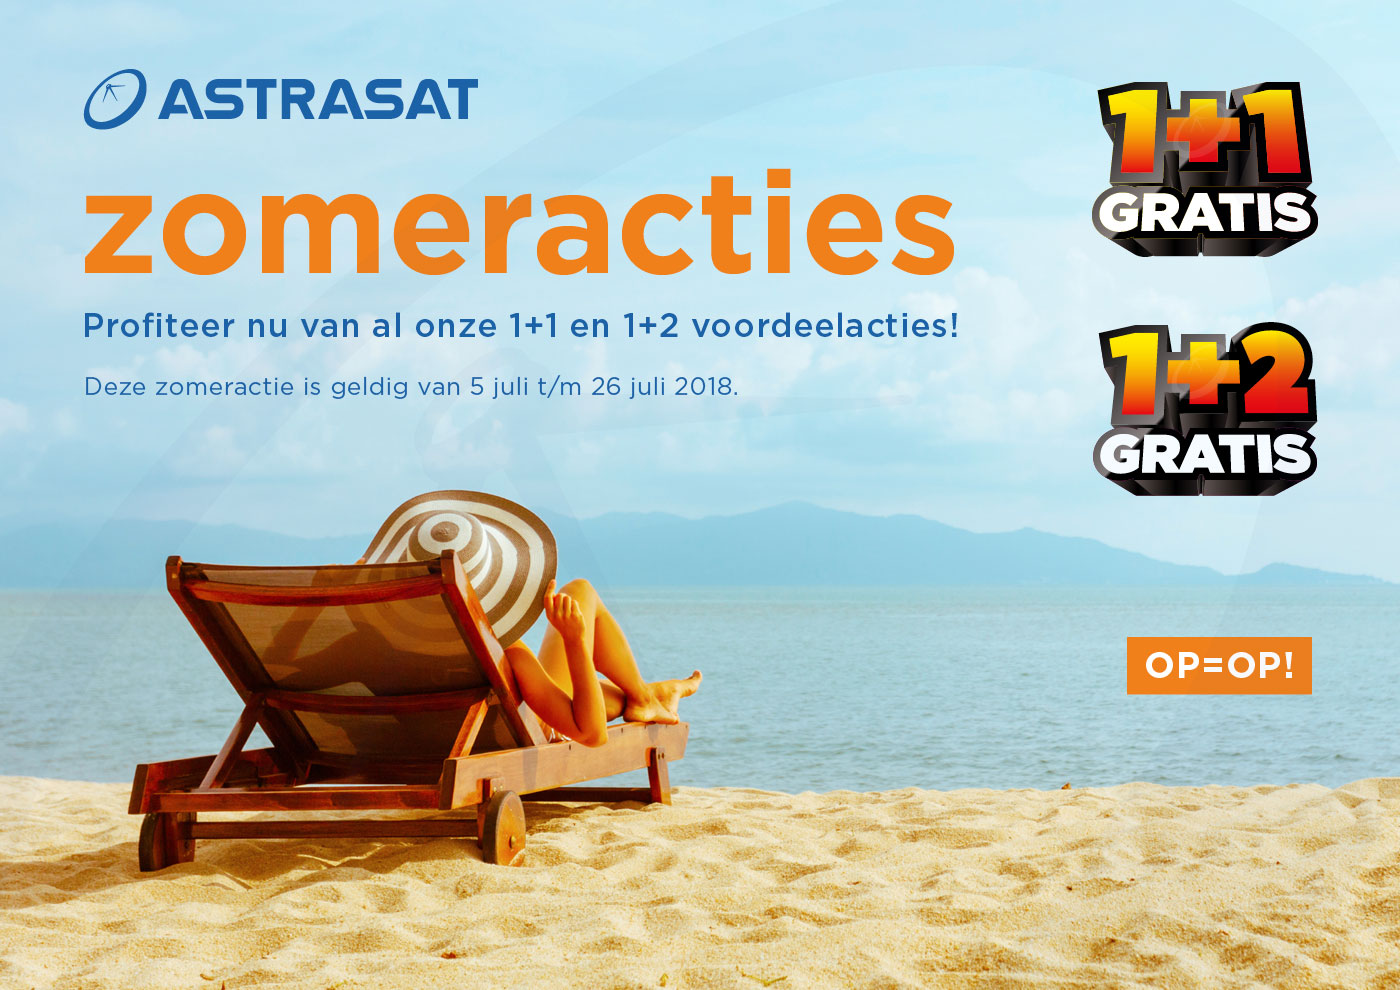 De Astrasat zomeractie voordeel weken zijn weer van start!